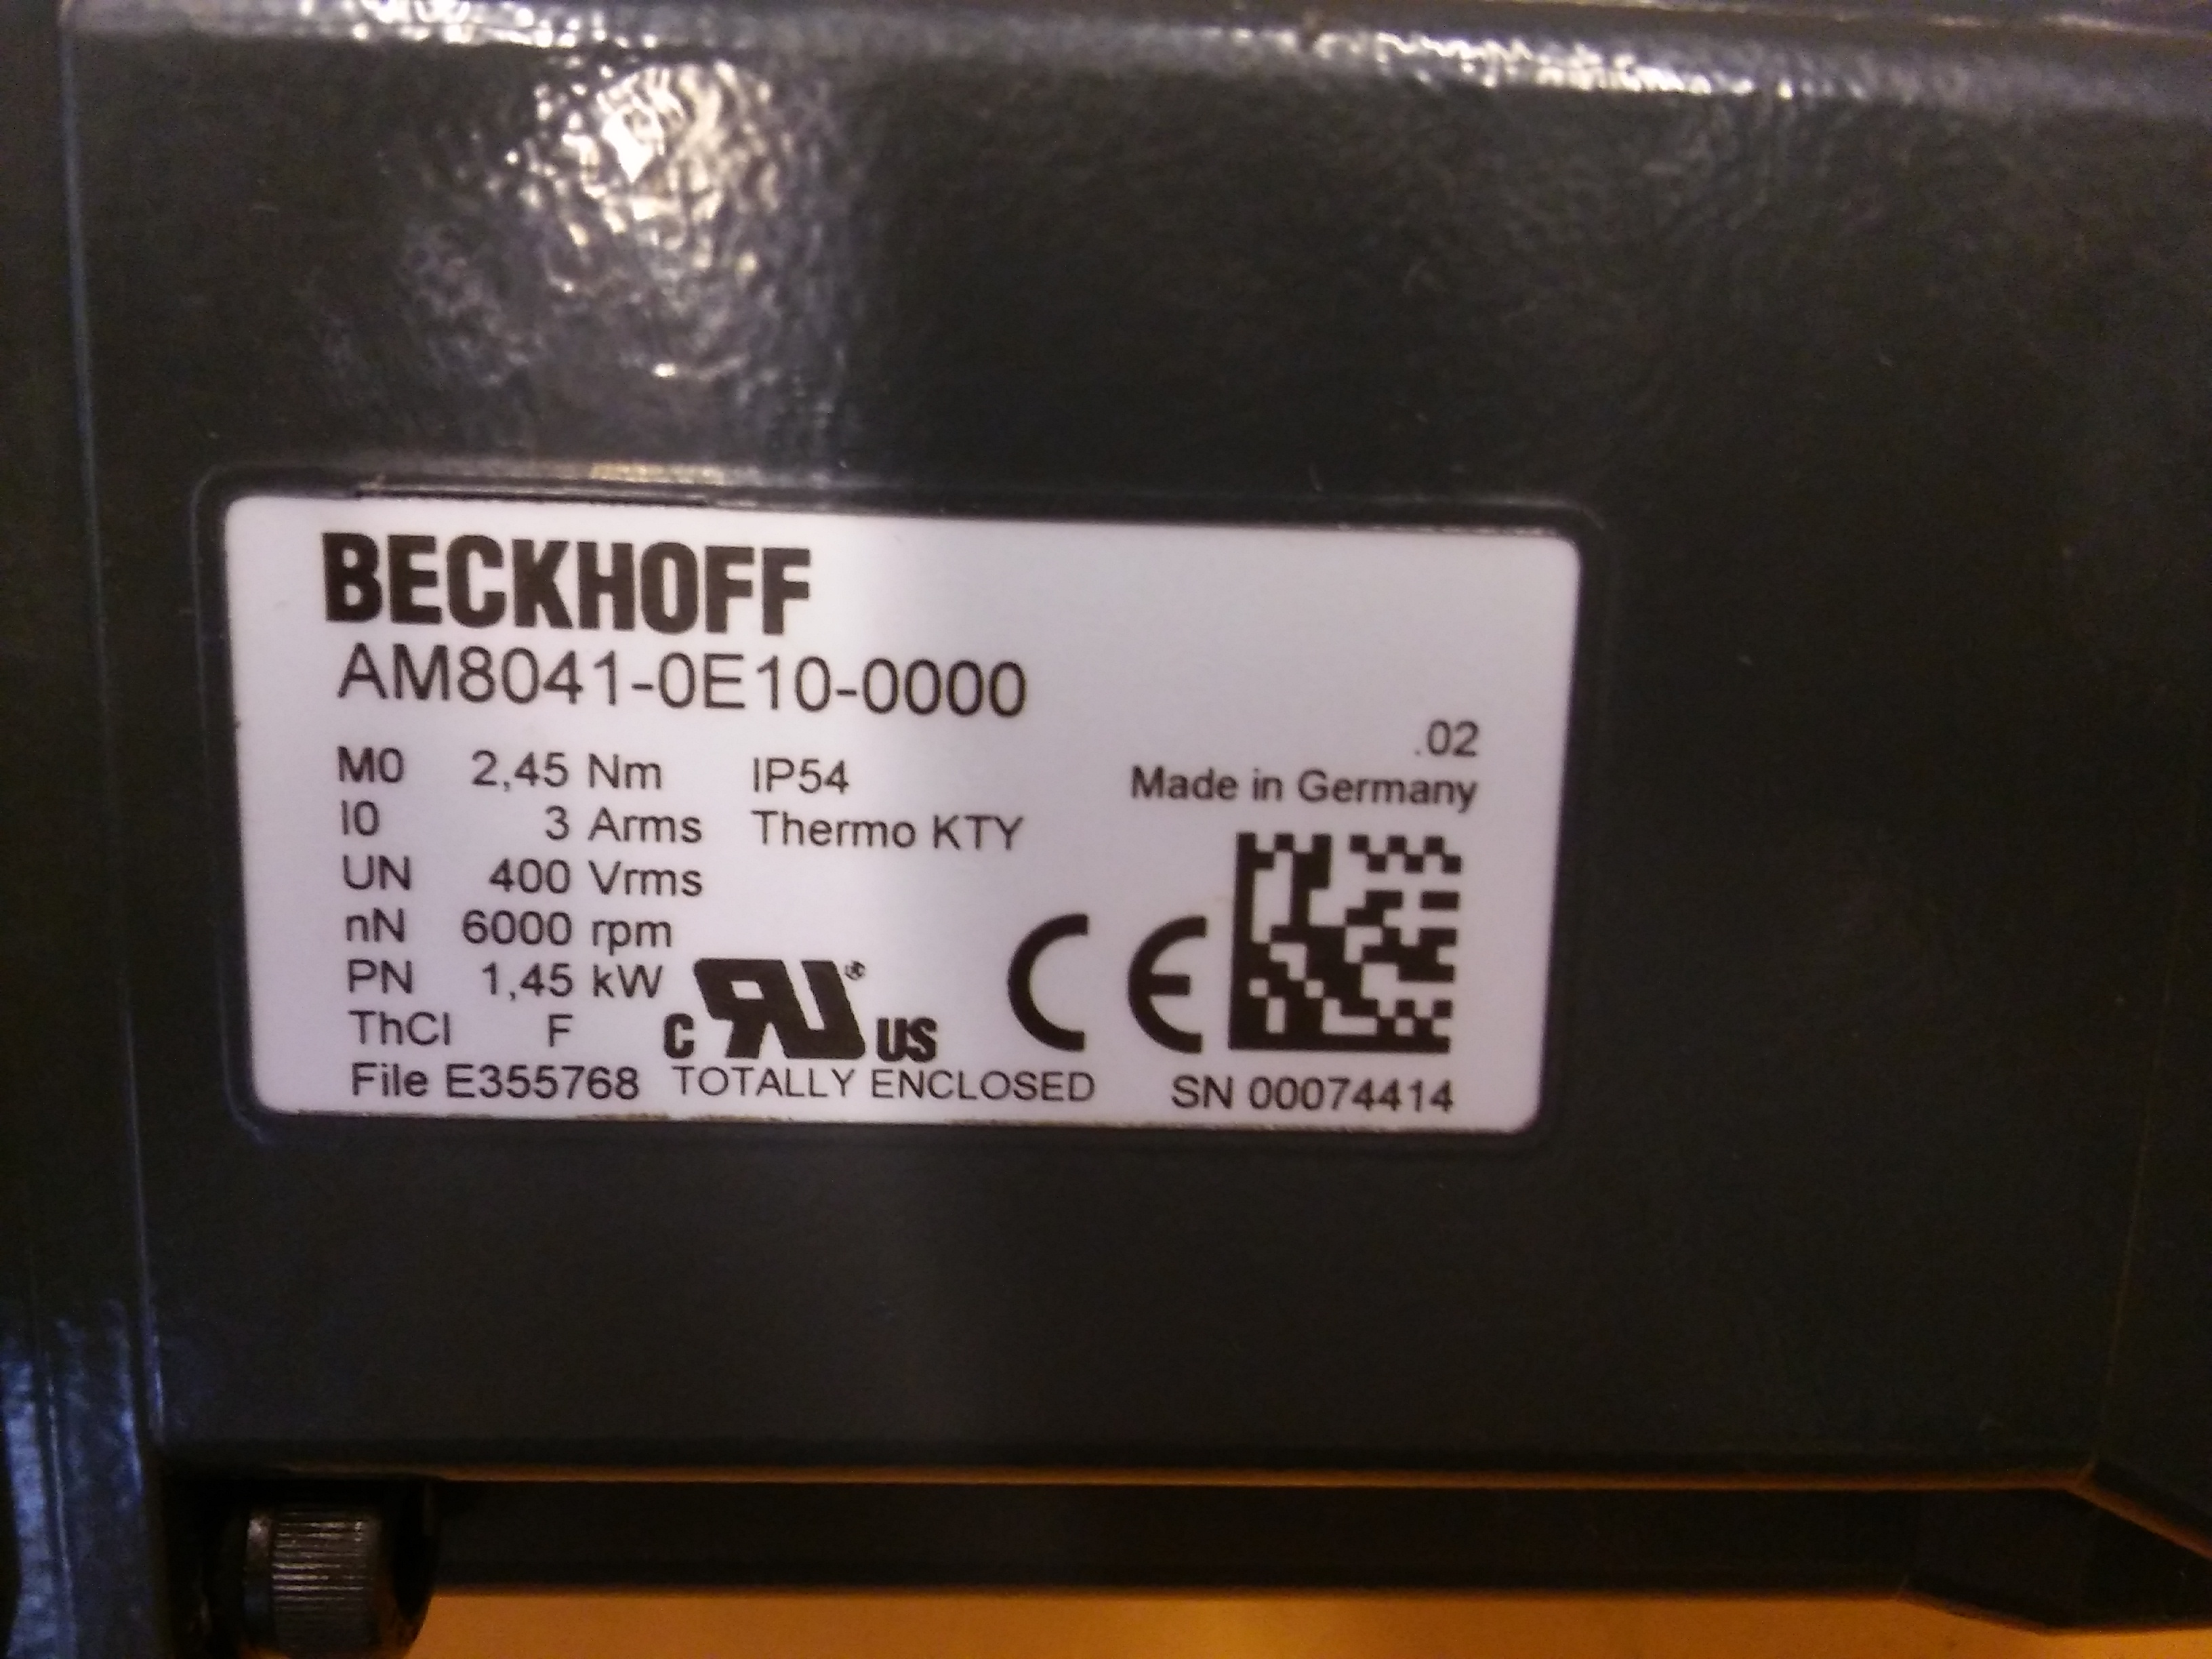 BECKHOFF AM8041-0E10-0000 AM8041-0E10 AM8041-0E100000 1,45KW 6000 RPM SERVO MOTOR